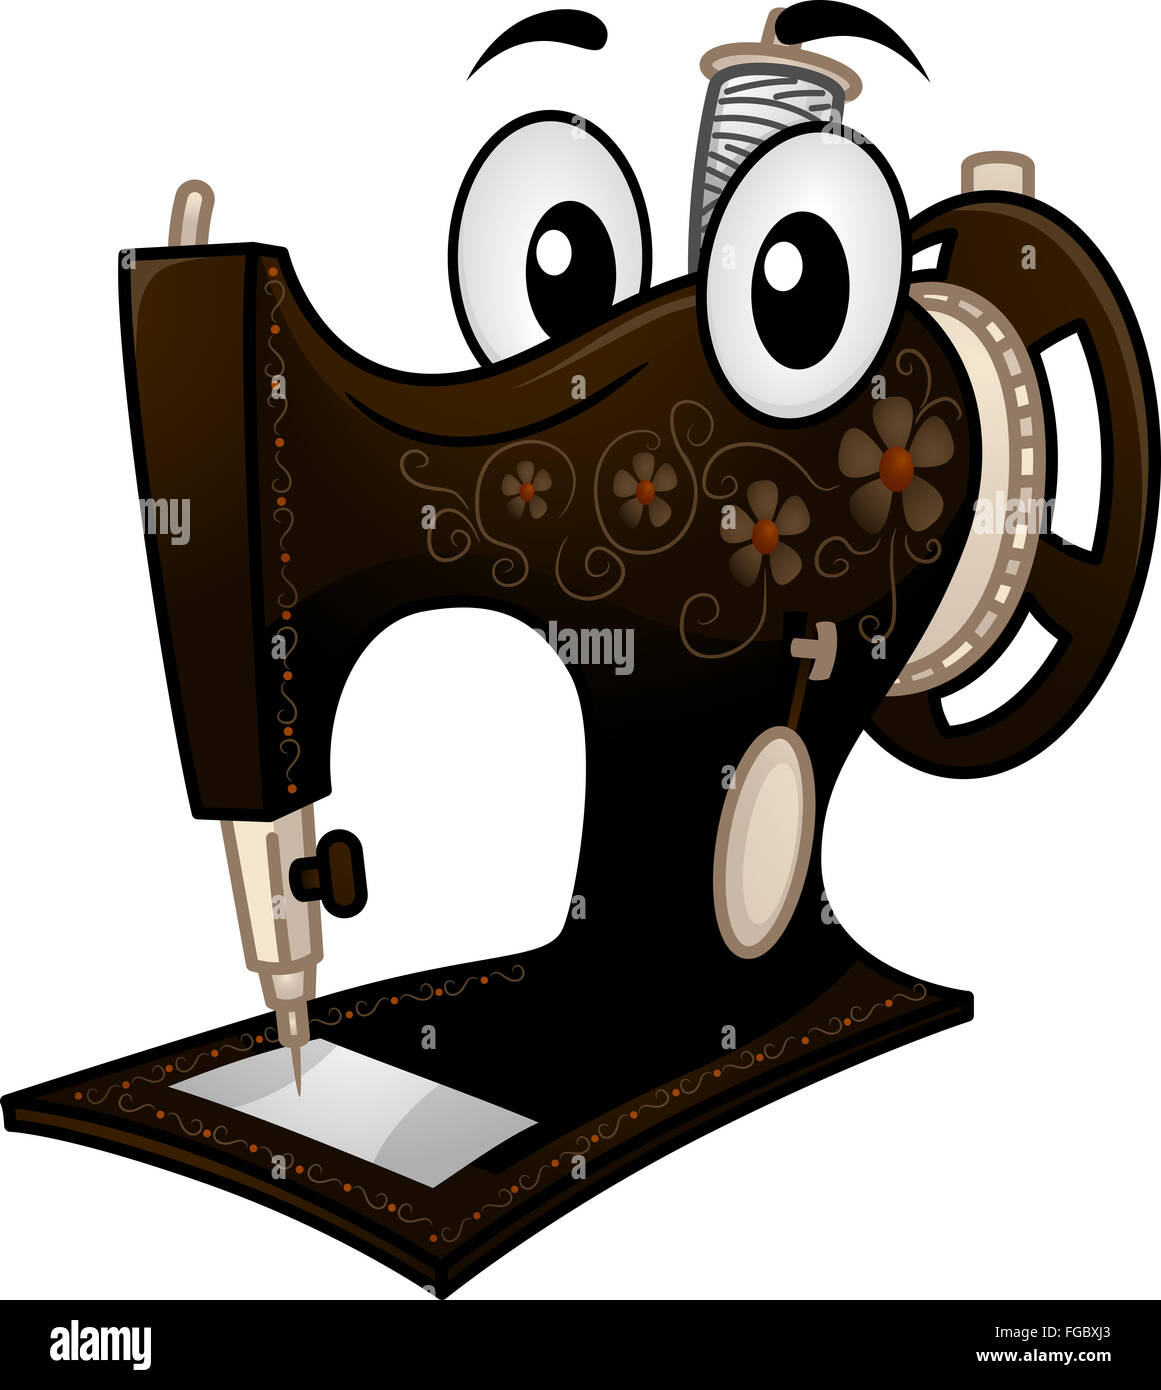 Il Mascot illustrazione di un Vintage macchina da cucire Foto Stock